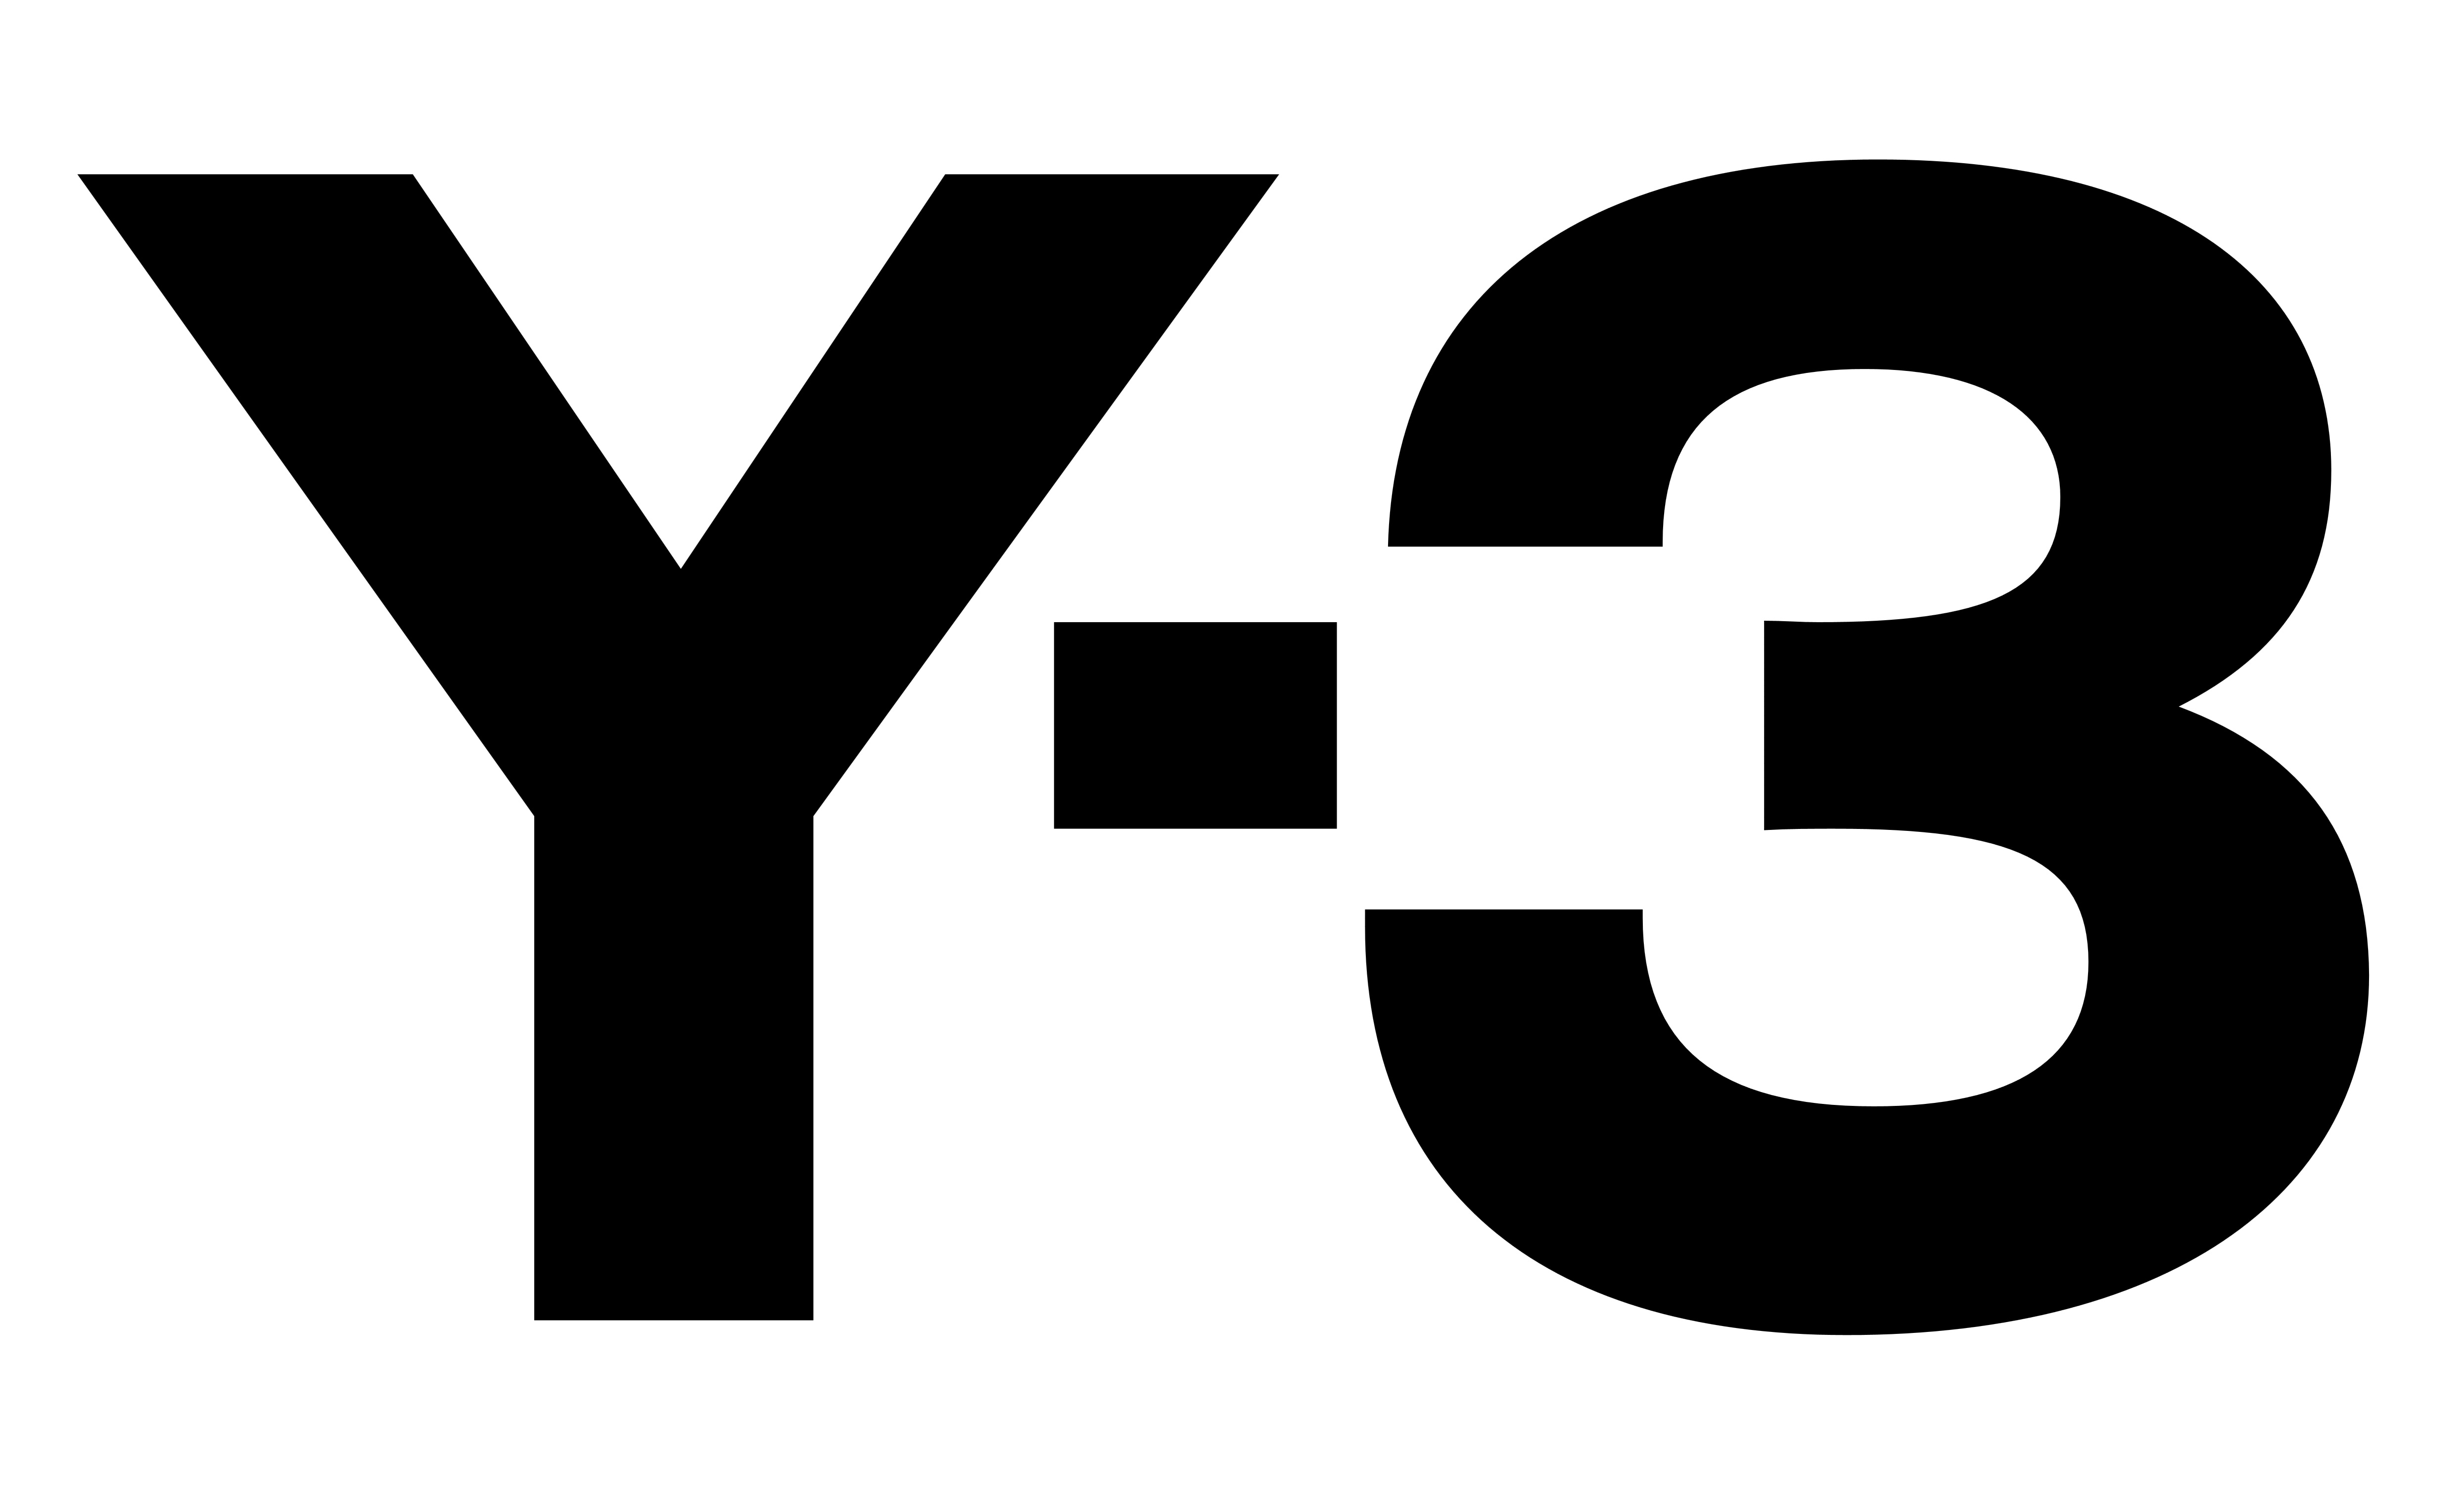 Y3 Logo - Y-3 – Logos Download